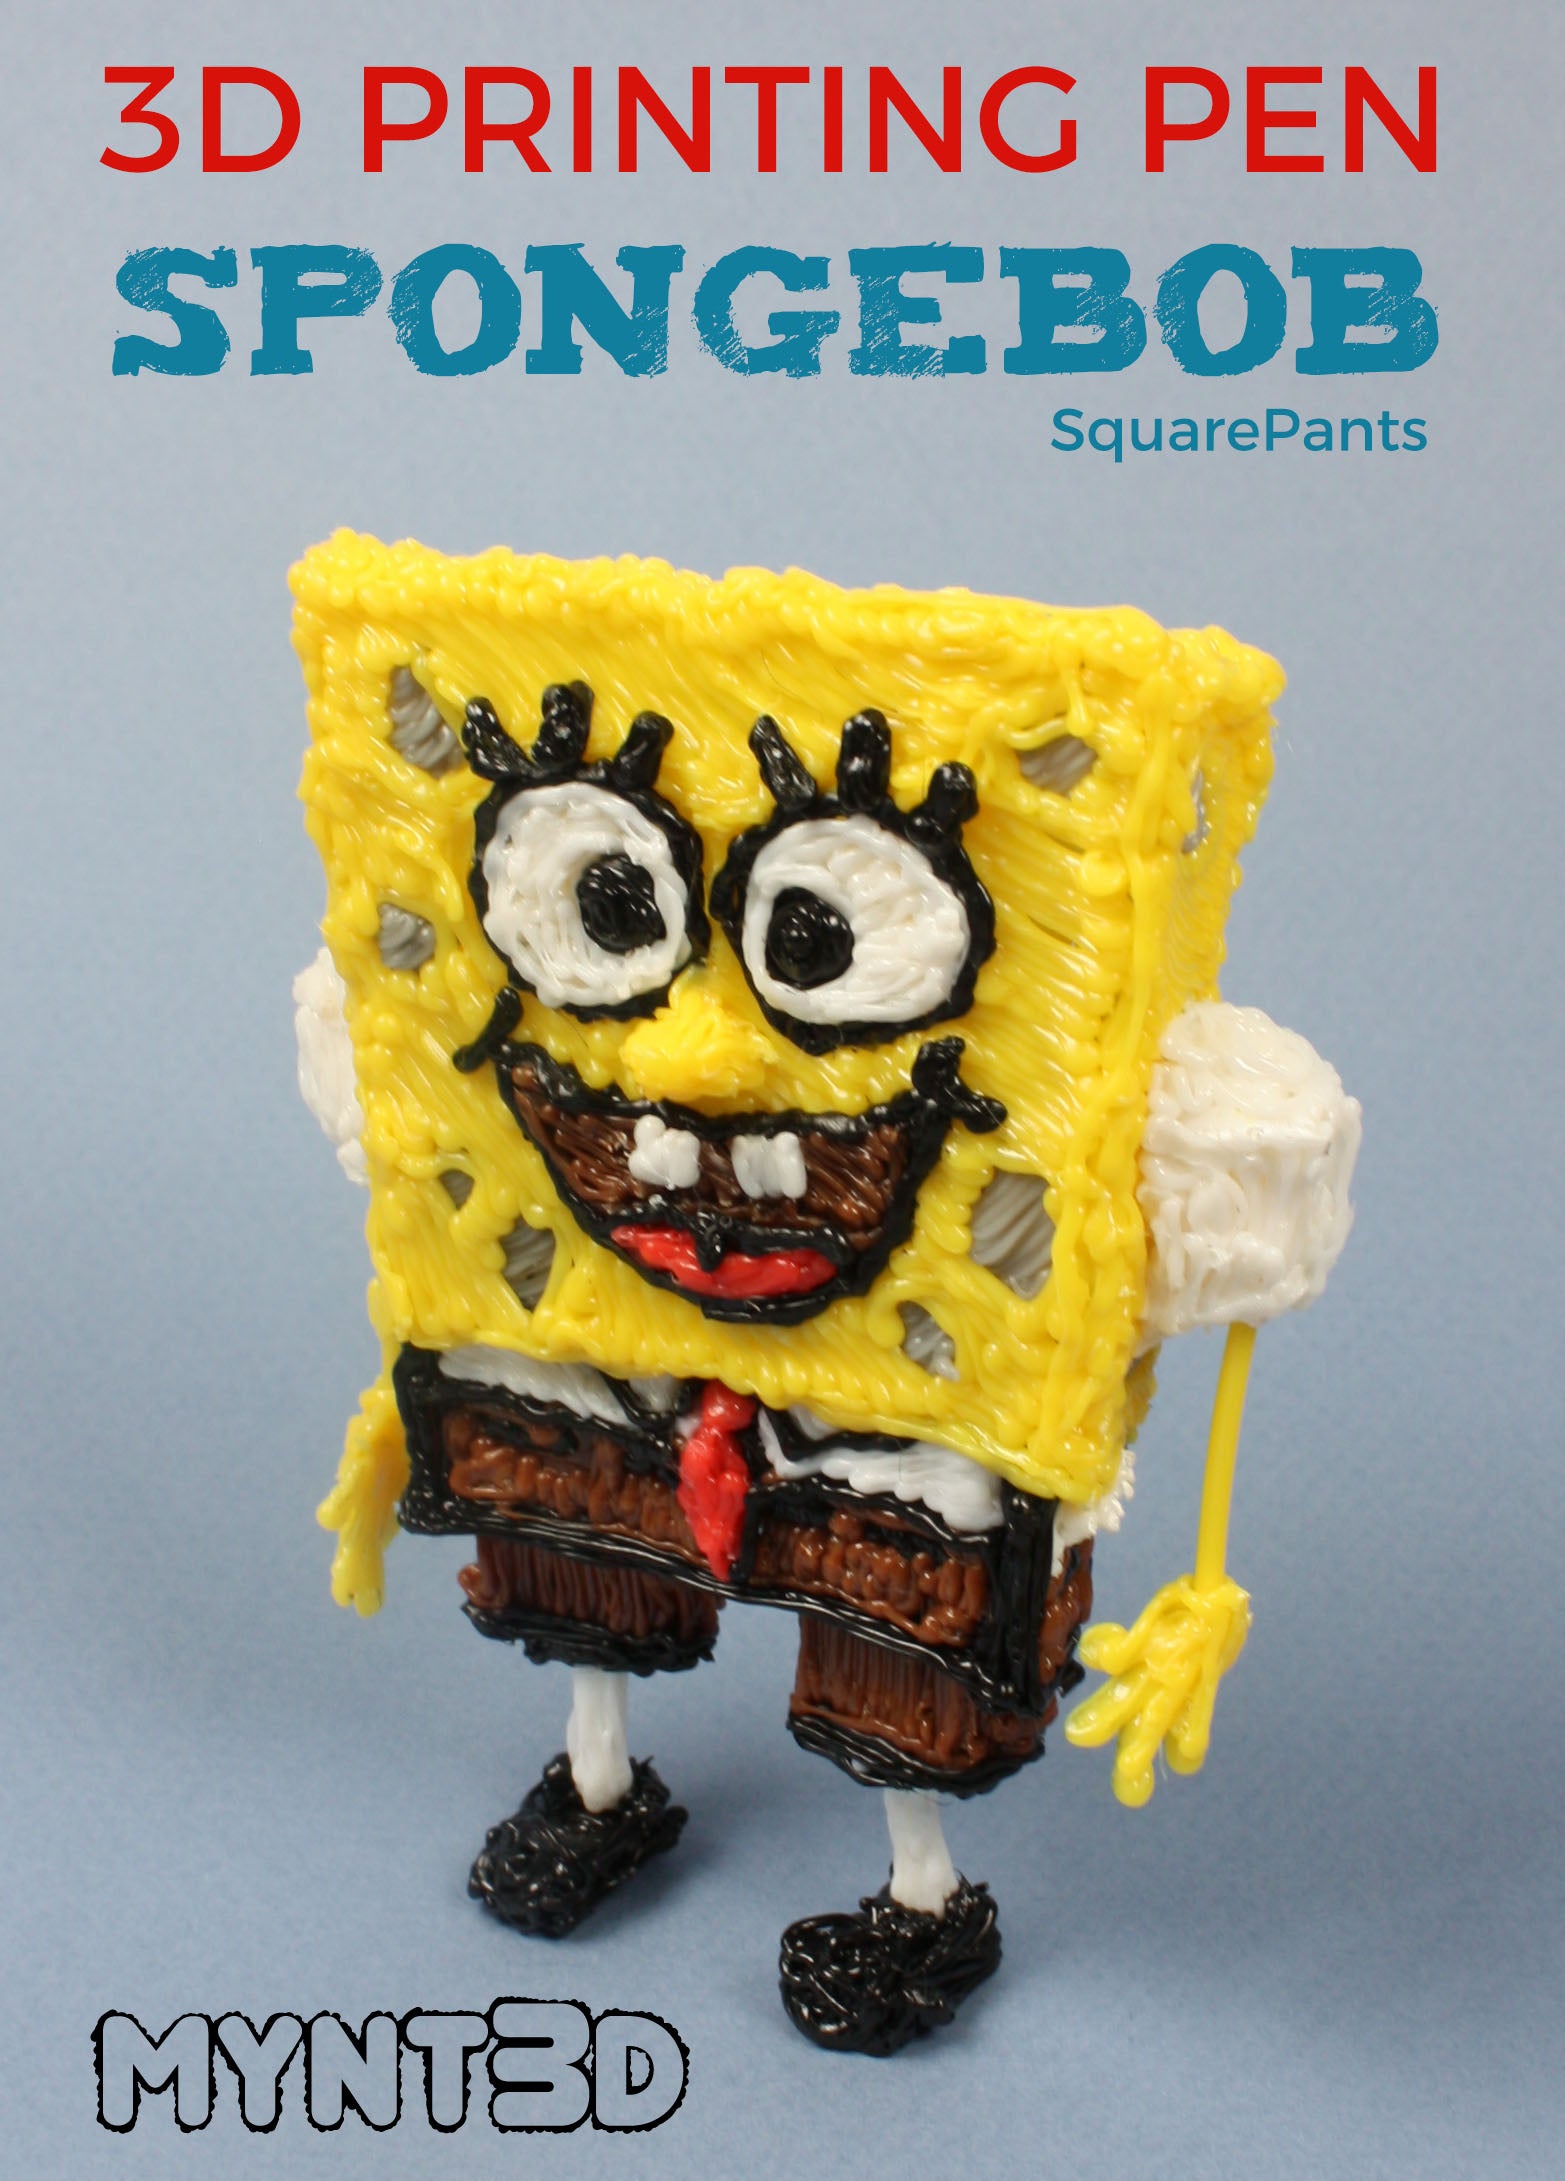 3D Pen SpongeBob Project